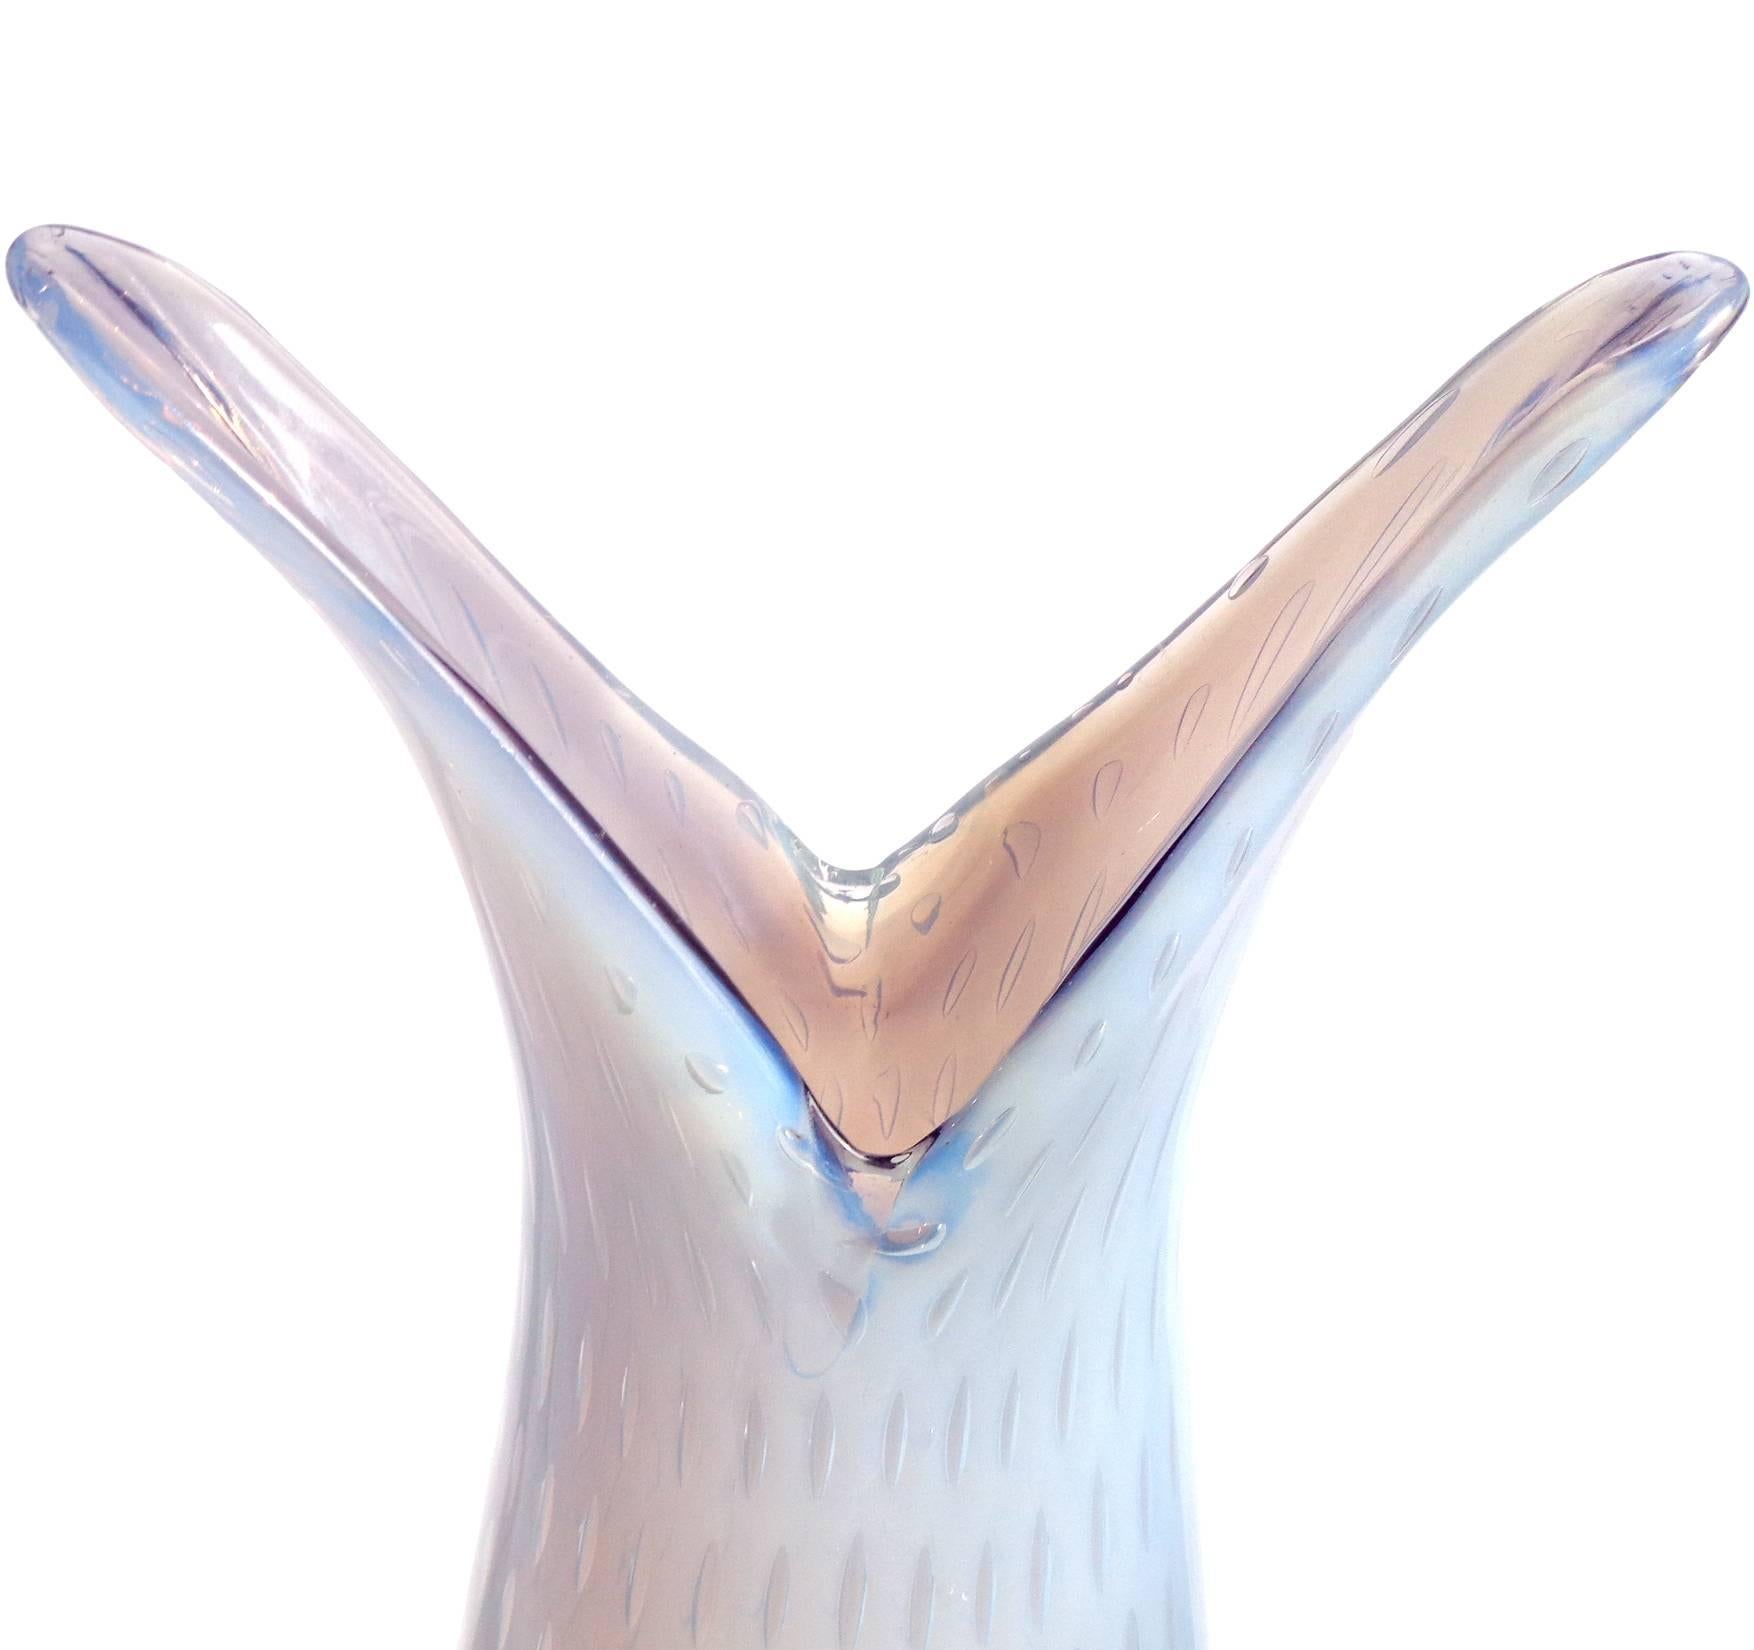 Magnifique vase d'art italien en verre soufflé à la main de Murano, opalescent, violet clair / lavande et bulles contrôlées. Documenté à la société Fratelli Toso. La couleur extérieure du vase change en fonction de la lumière, passant d'une couleur